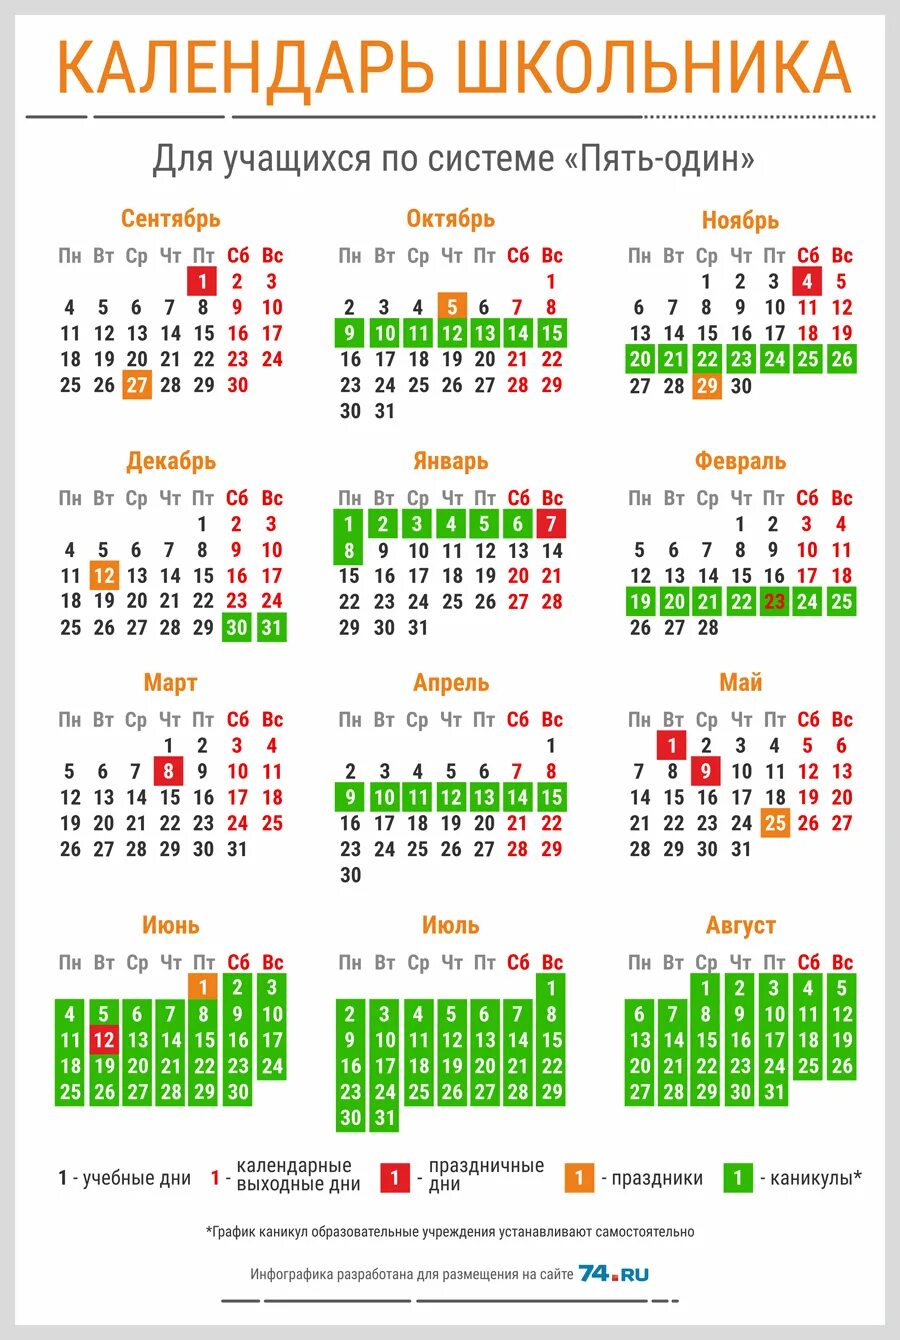 Сколько каникулы у школьников в марте. Календарь школьника. Выходные в мое в школах. Календарь каникул. Календарь школьных праздников.